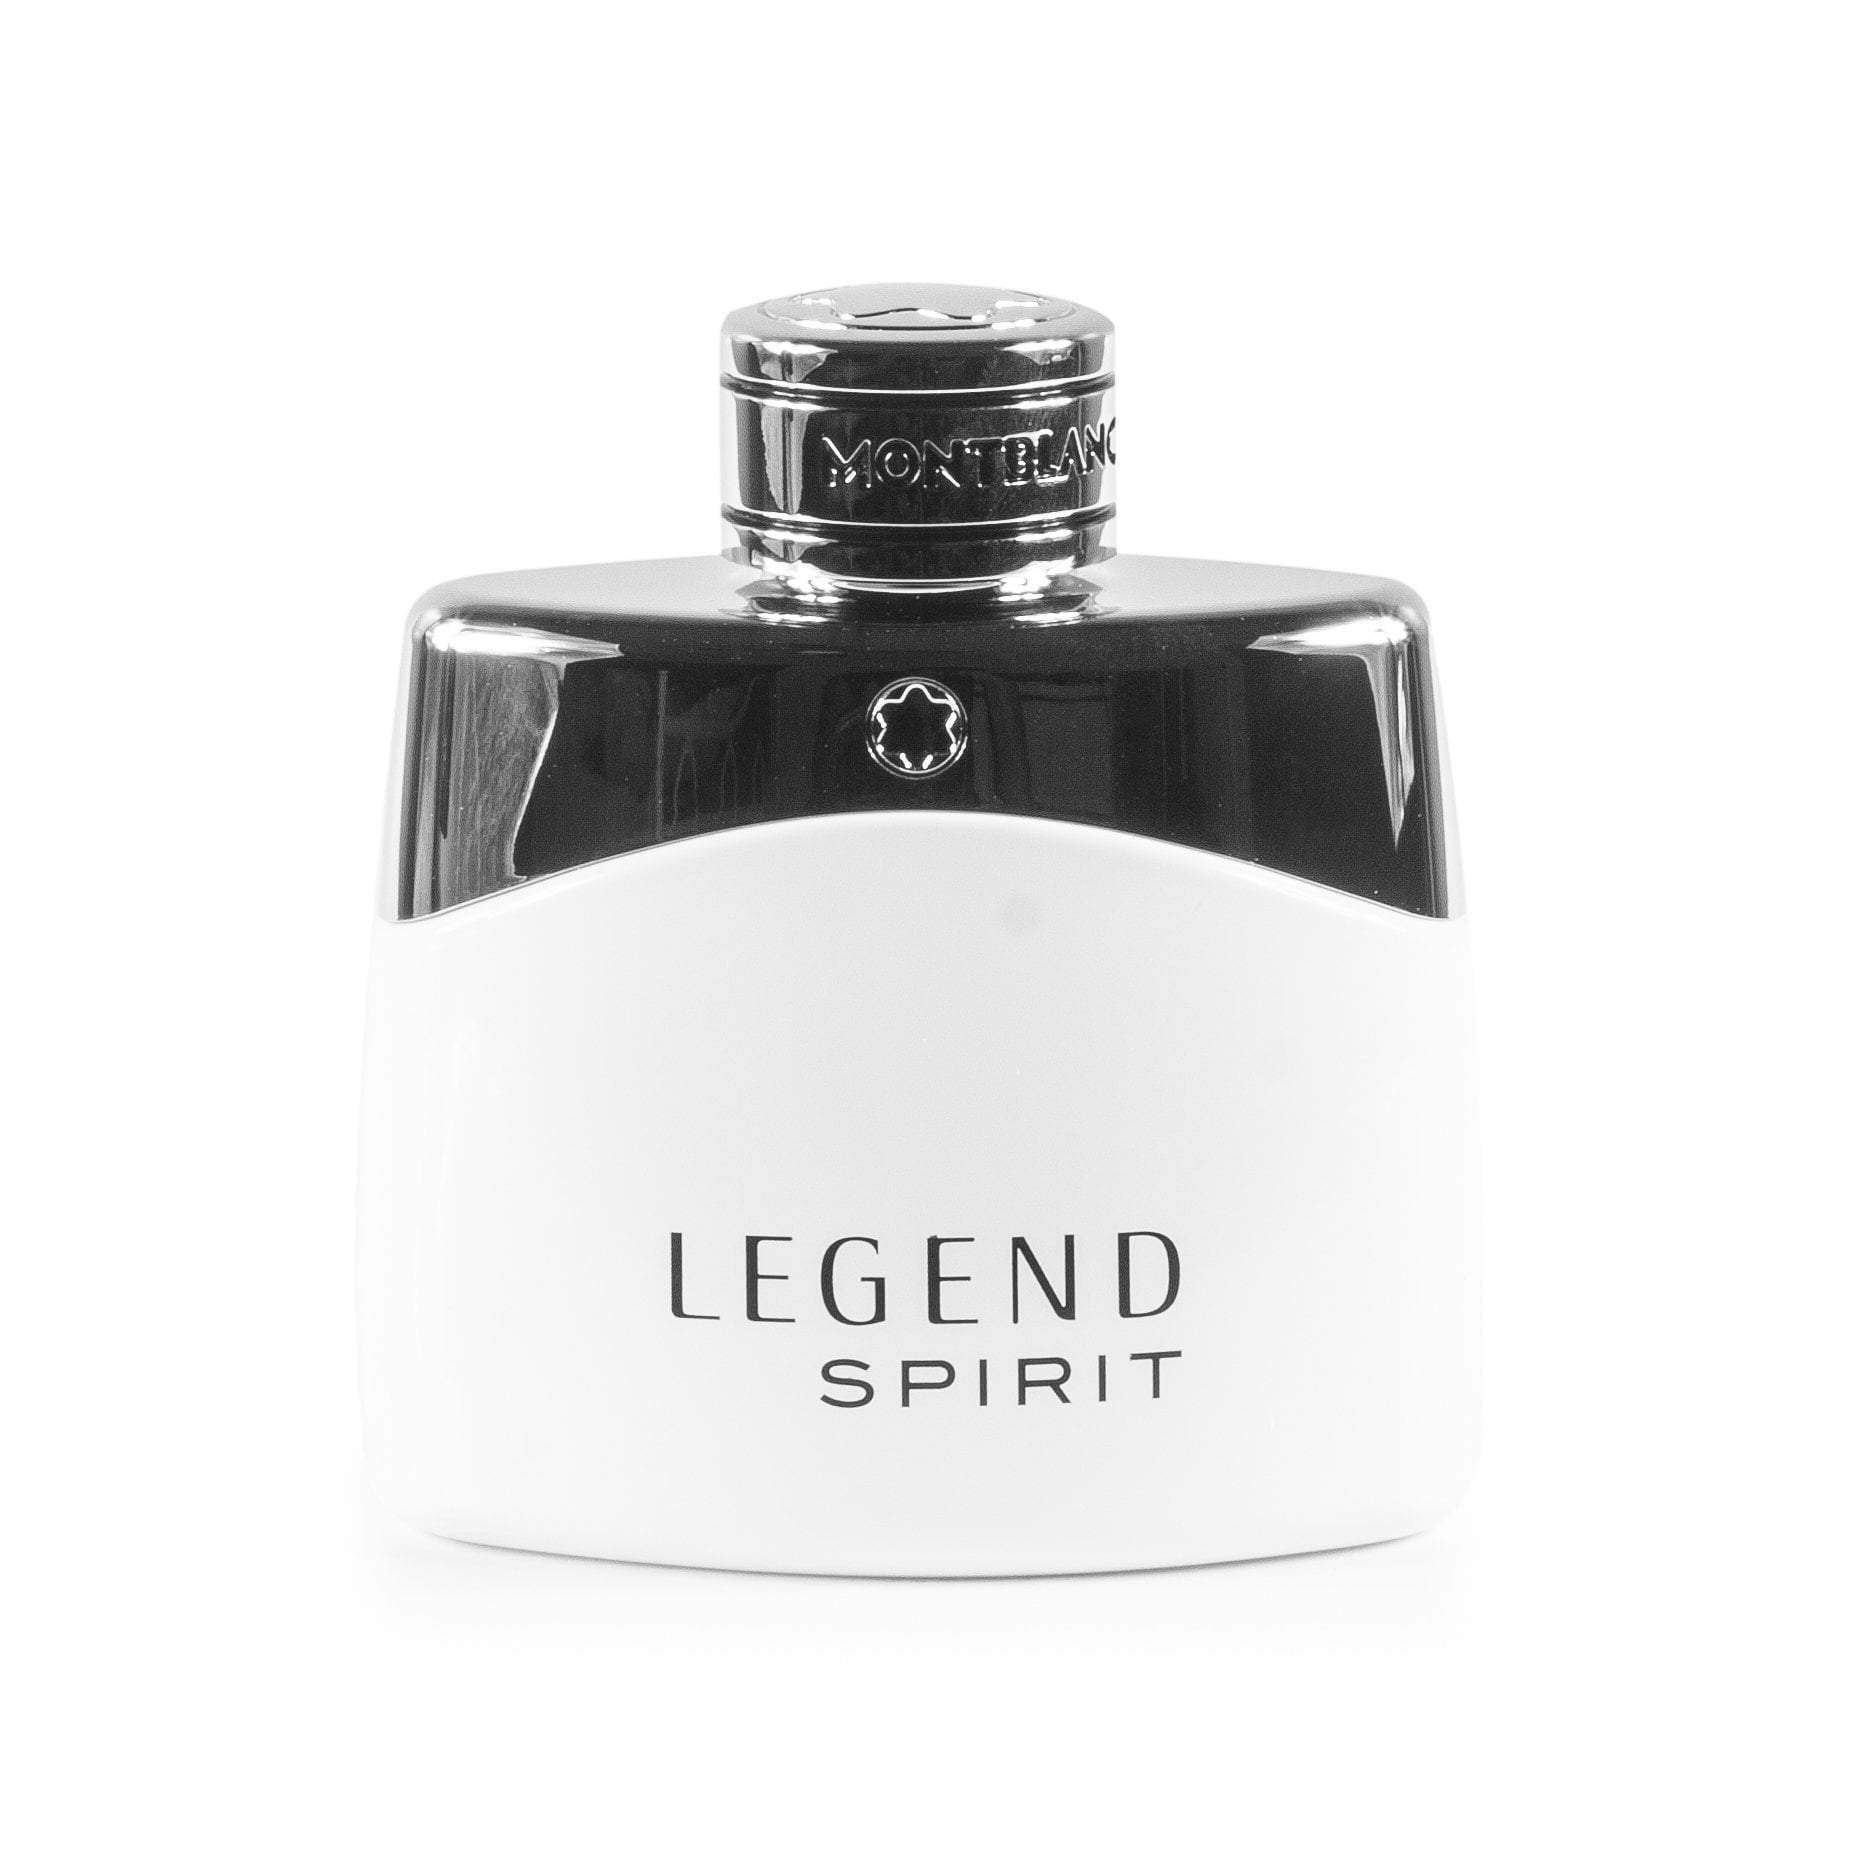 Legend Spirit Eau de Toilette Spray for Men by Montblanc, Product image 3